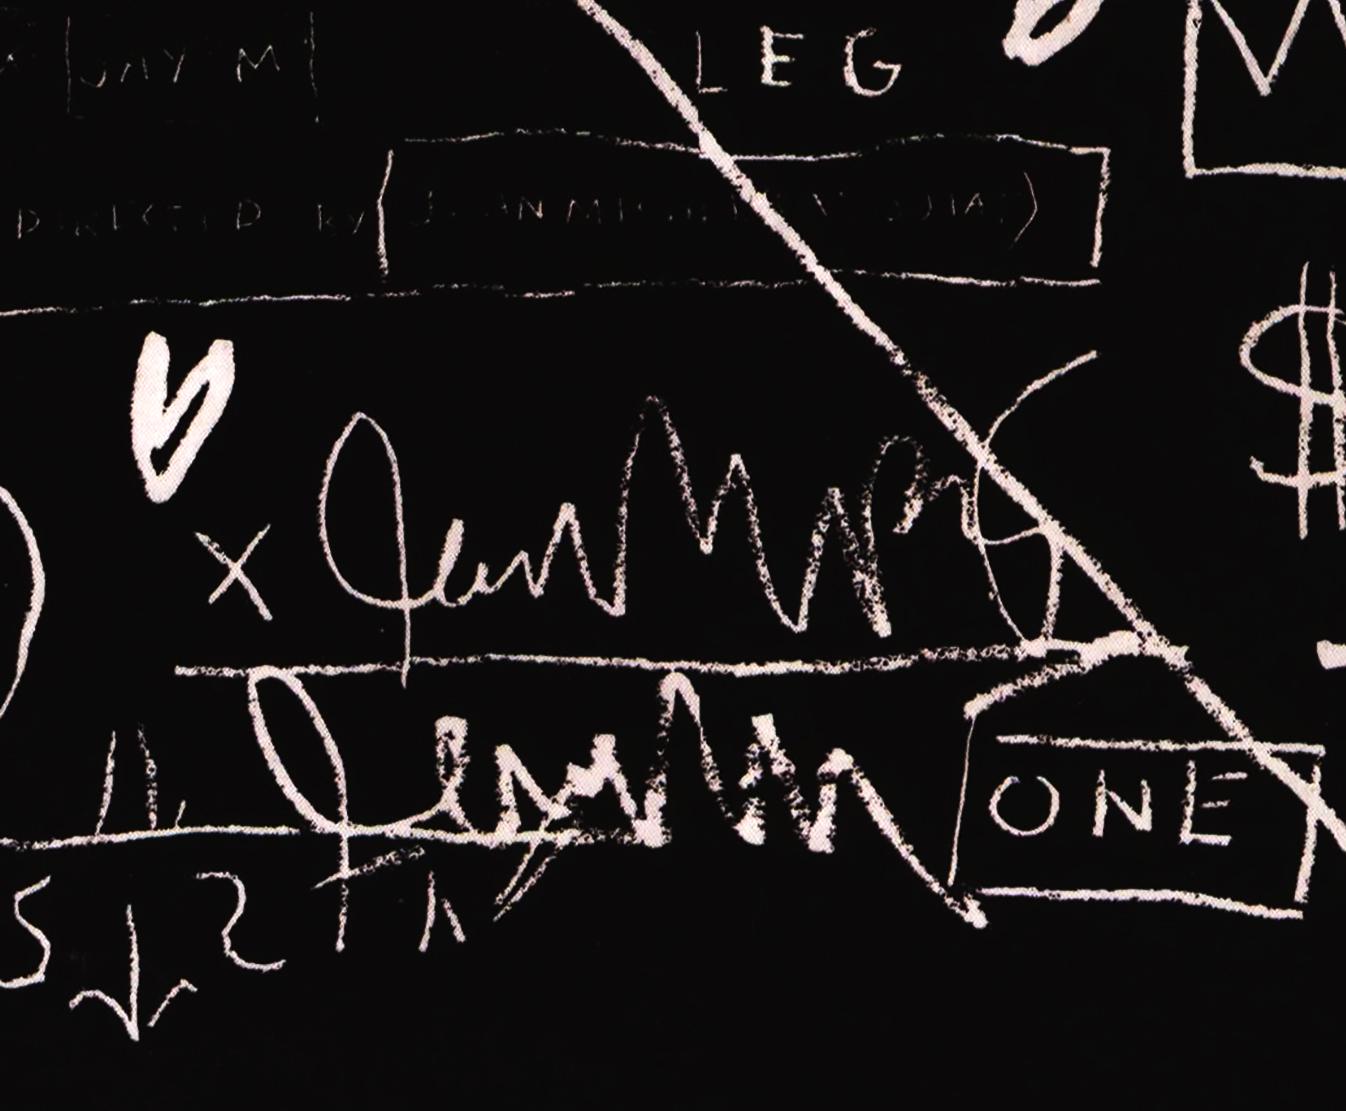 Basquiat Record Art :
2001 2ème pressage en quantité limitée.  Beat-Bop, est un morceau de 10 minutes synthétisant divers instruments et motifs de rimes, pour lequel Basquiat a produit et conçu la maquette originale en 1983.  

Lithographie offset